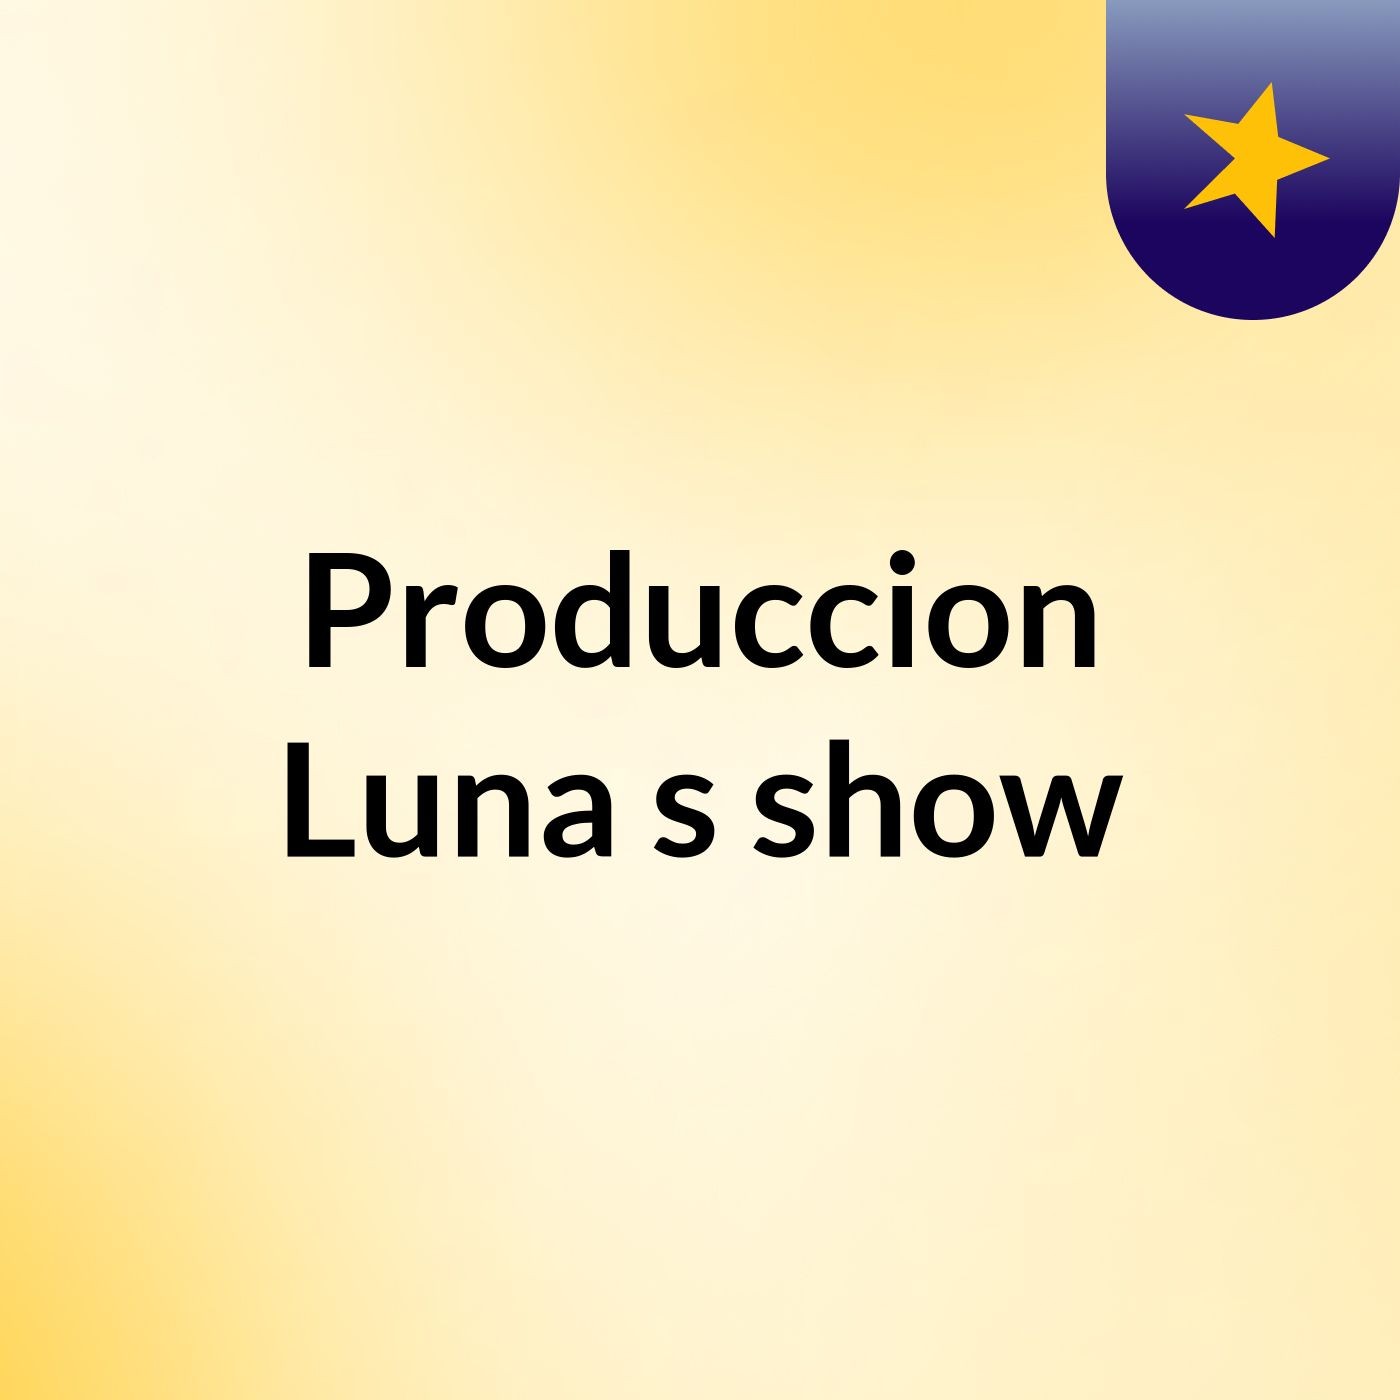 Produccion Luna's show